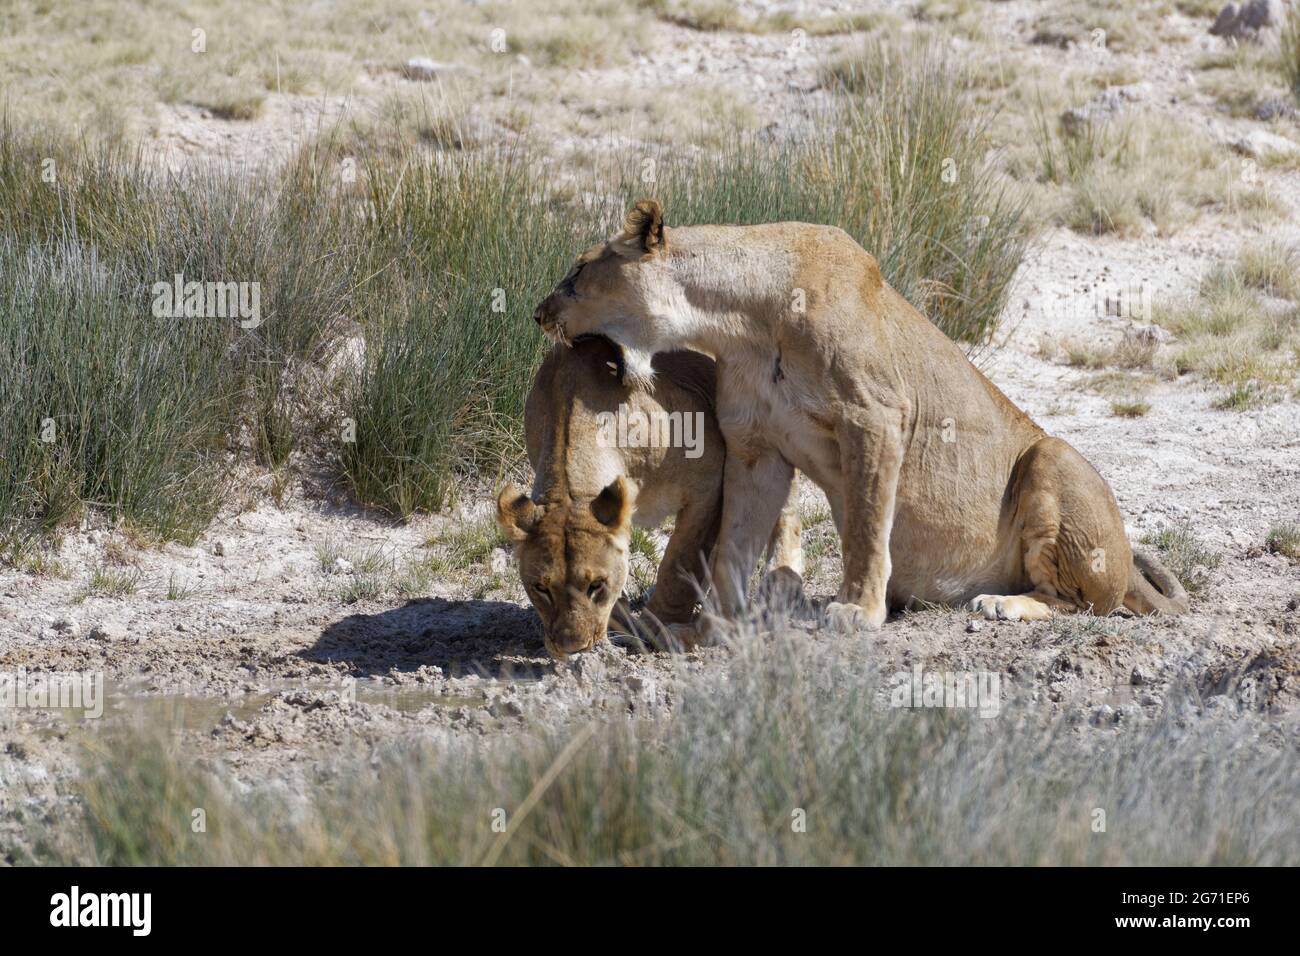 Lionesses (Panthera leo), deux femelles adultes au trou d'eau, l'une buvant d'une flaque, l'autre montrant de l'affection, Parc national d'Etosha, Namibie Banque D'Images